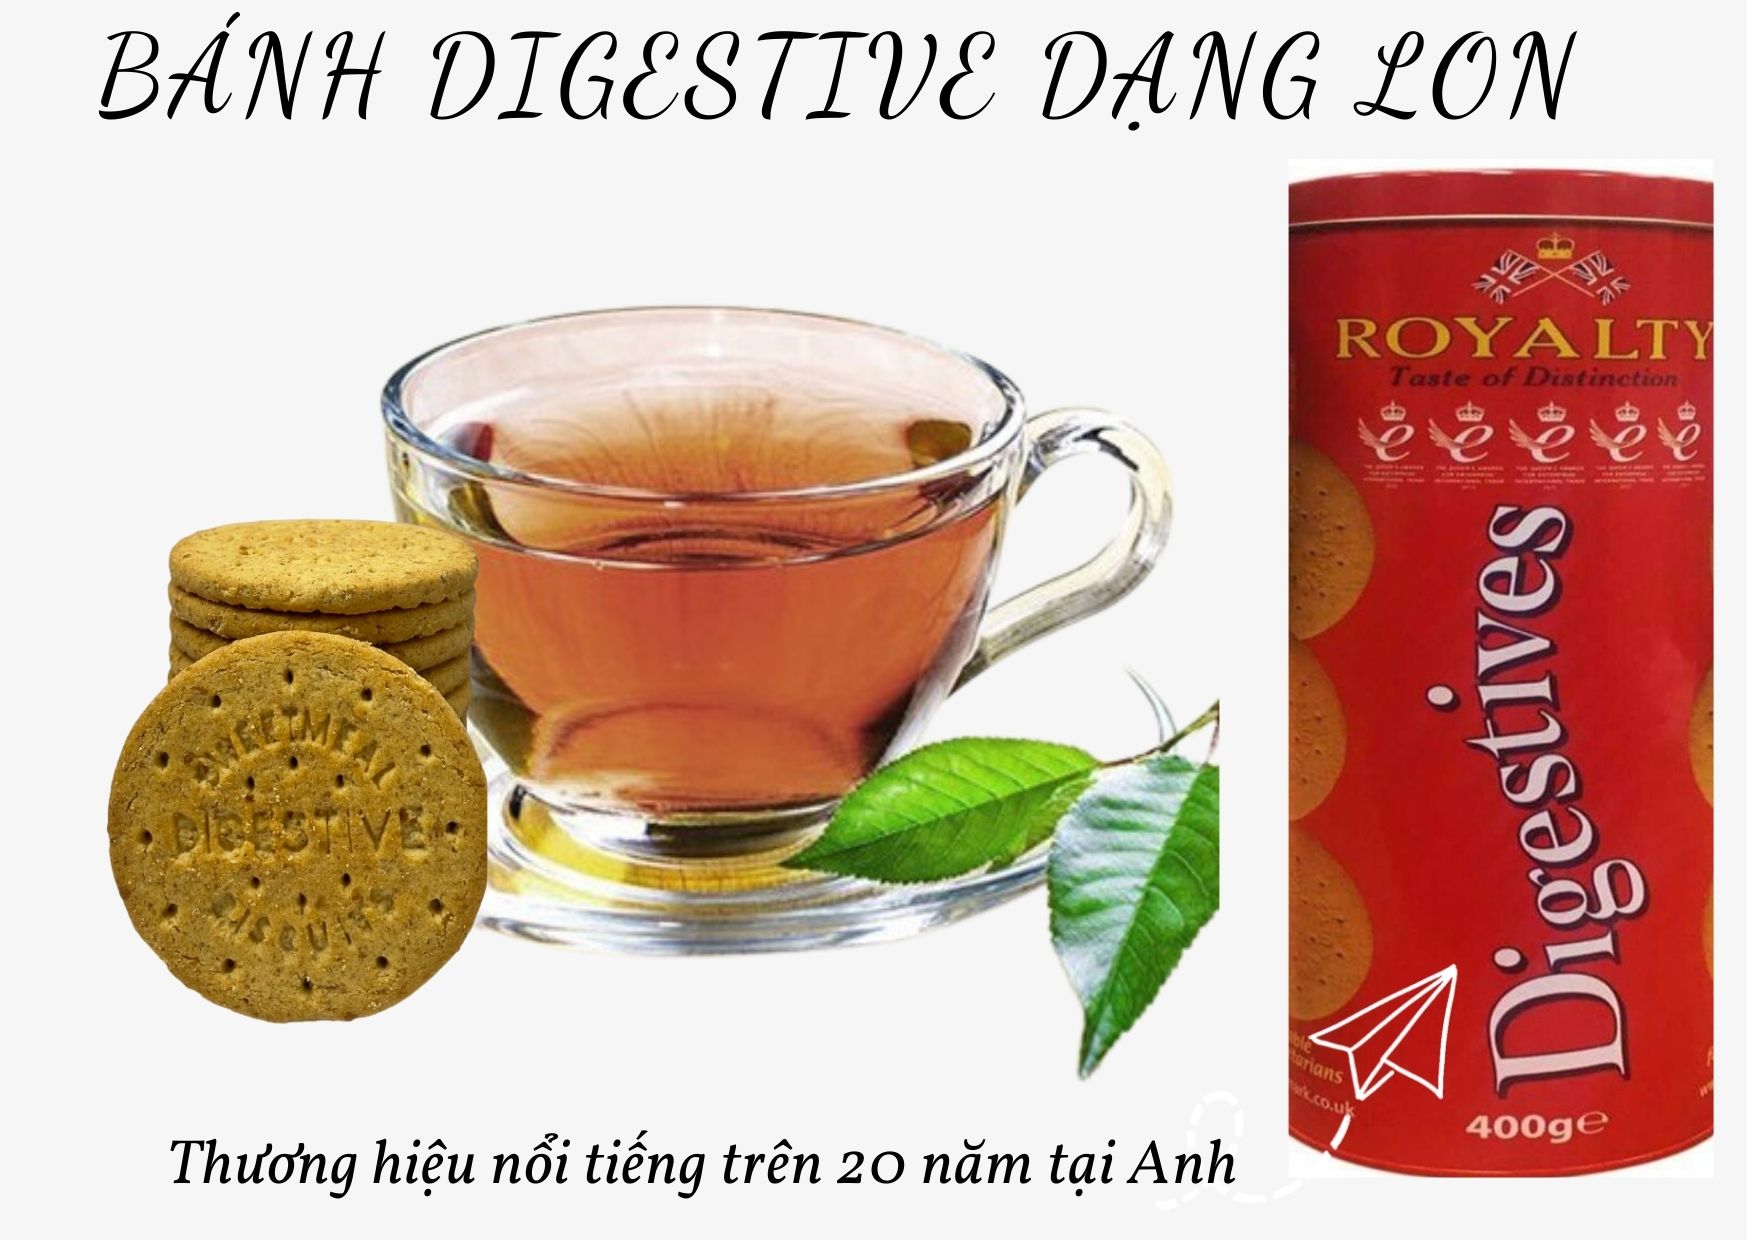 Bánh quy ăn kiêng Digestive Royalty 400g